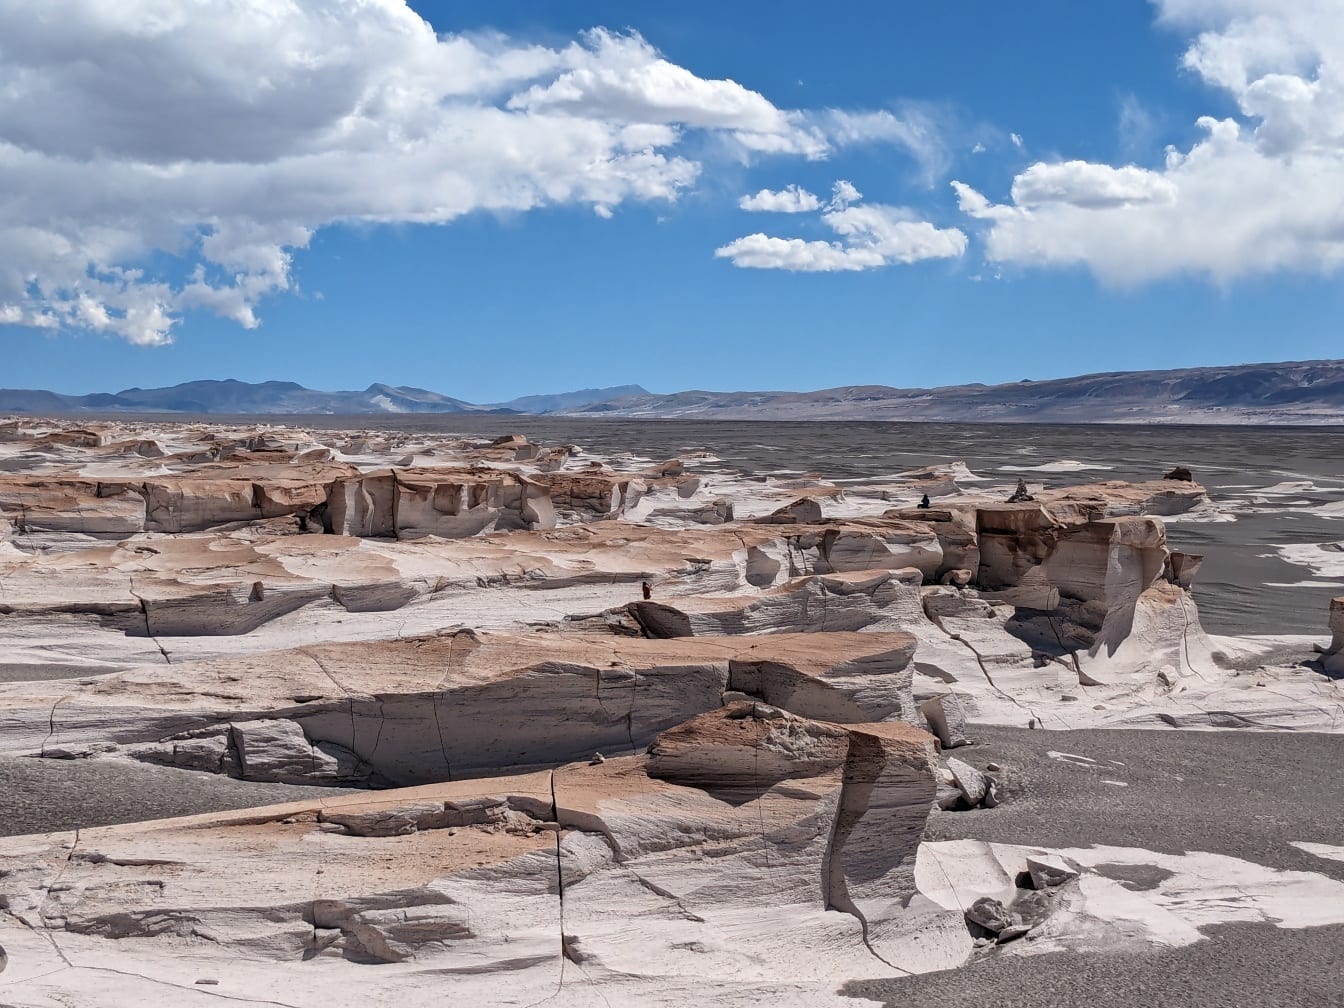 Pole pemzy, chránená prírodná oblasť v departemente Antofagasta de la Sierra v Argentíne